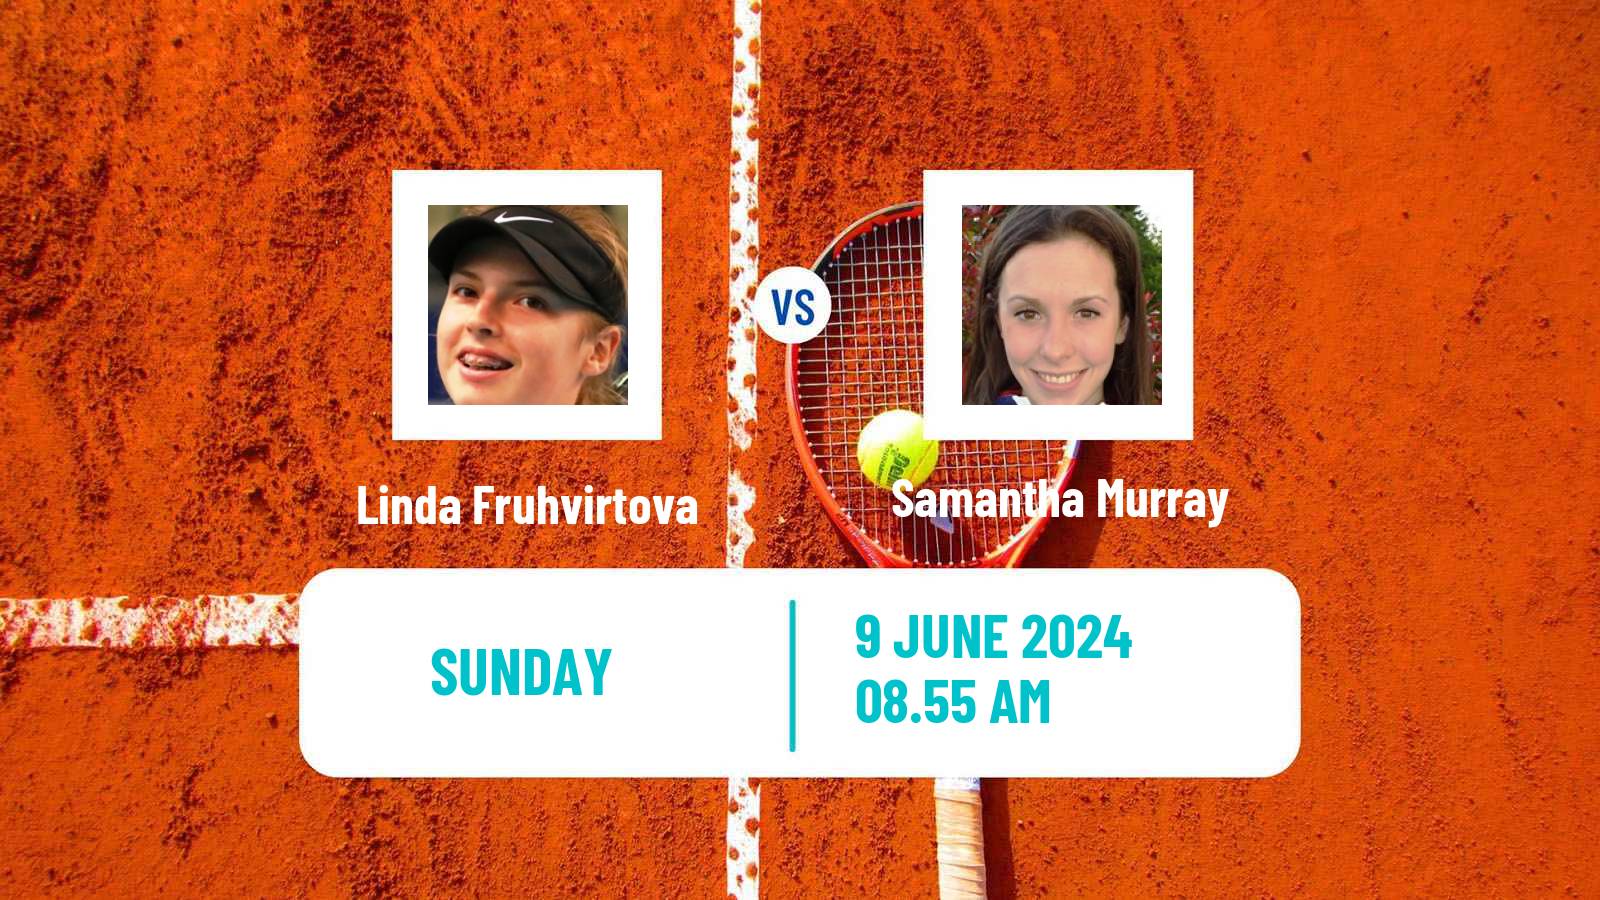 Tennis WTA Nottingham Linda Fruhvirtova - Samantha Murray